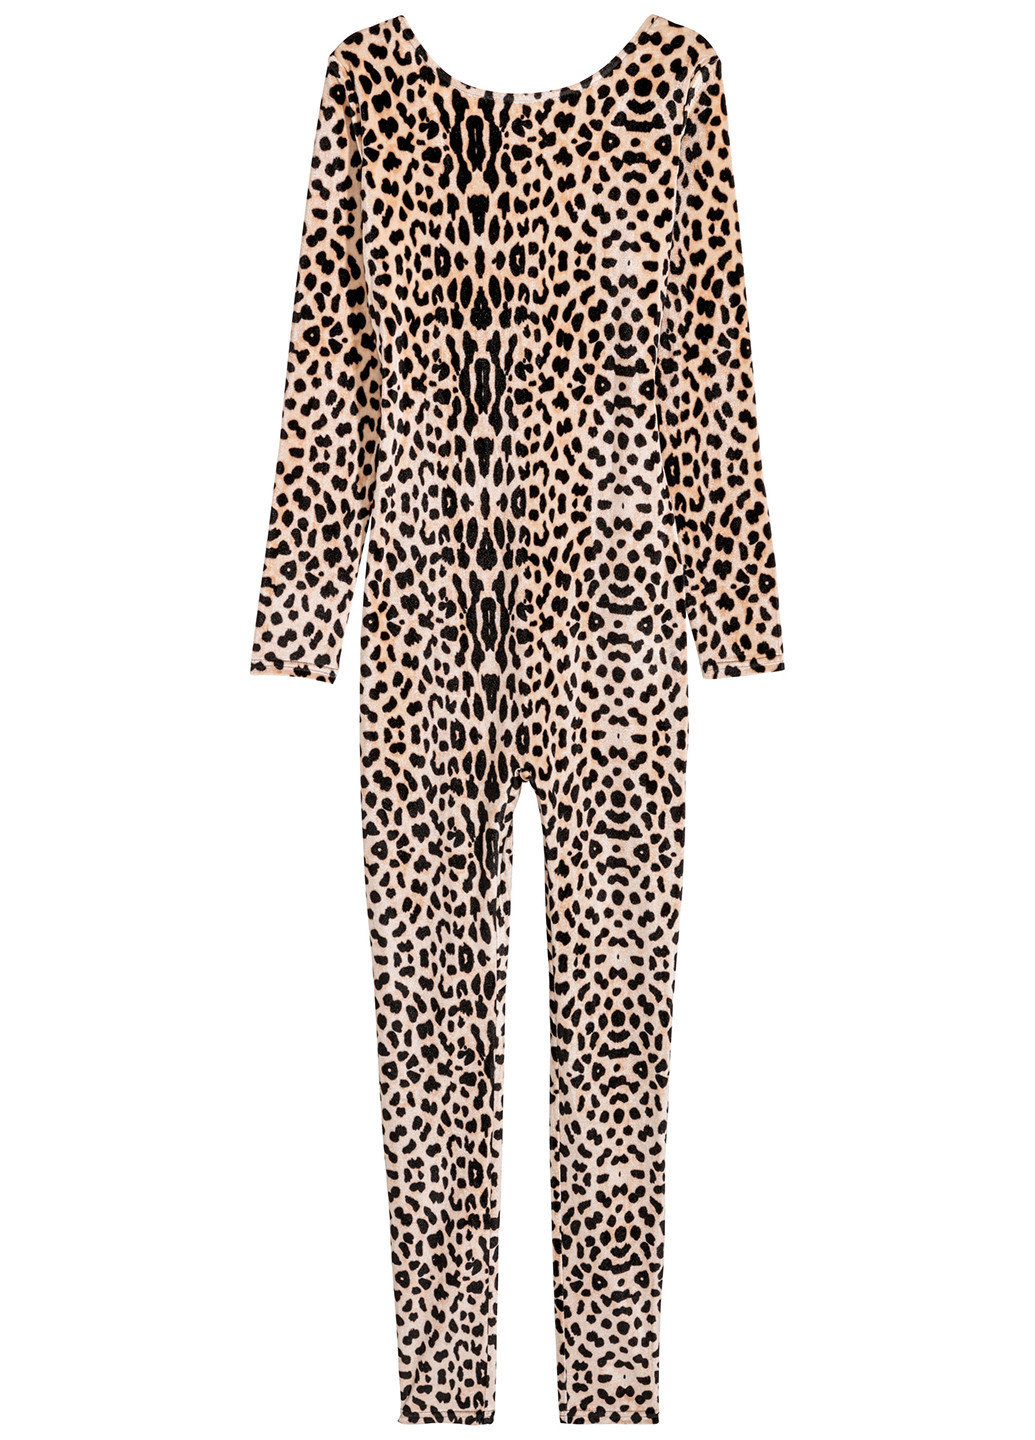 Комбинезон H&M комбинезон-брюки леопардовый комбинированный кэжуал полиэстер, велюр